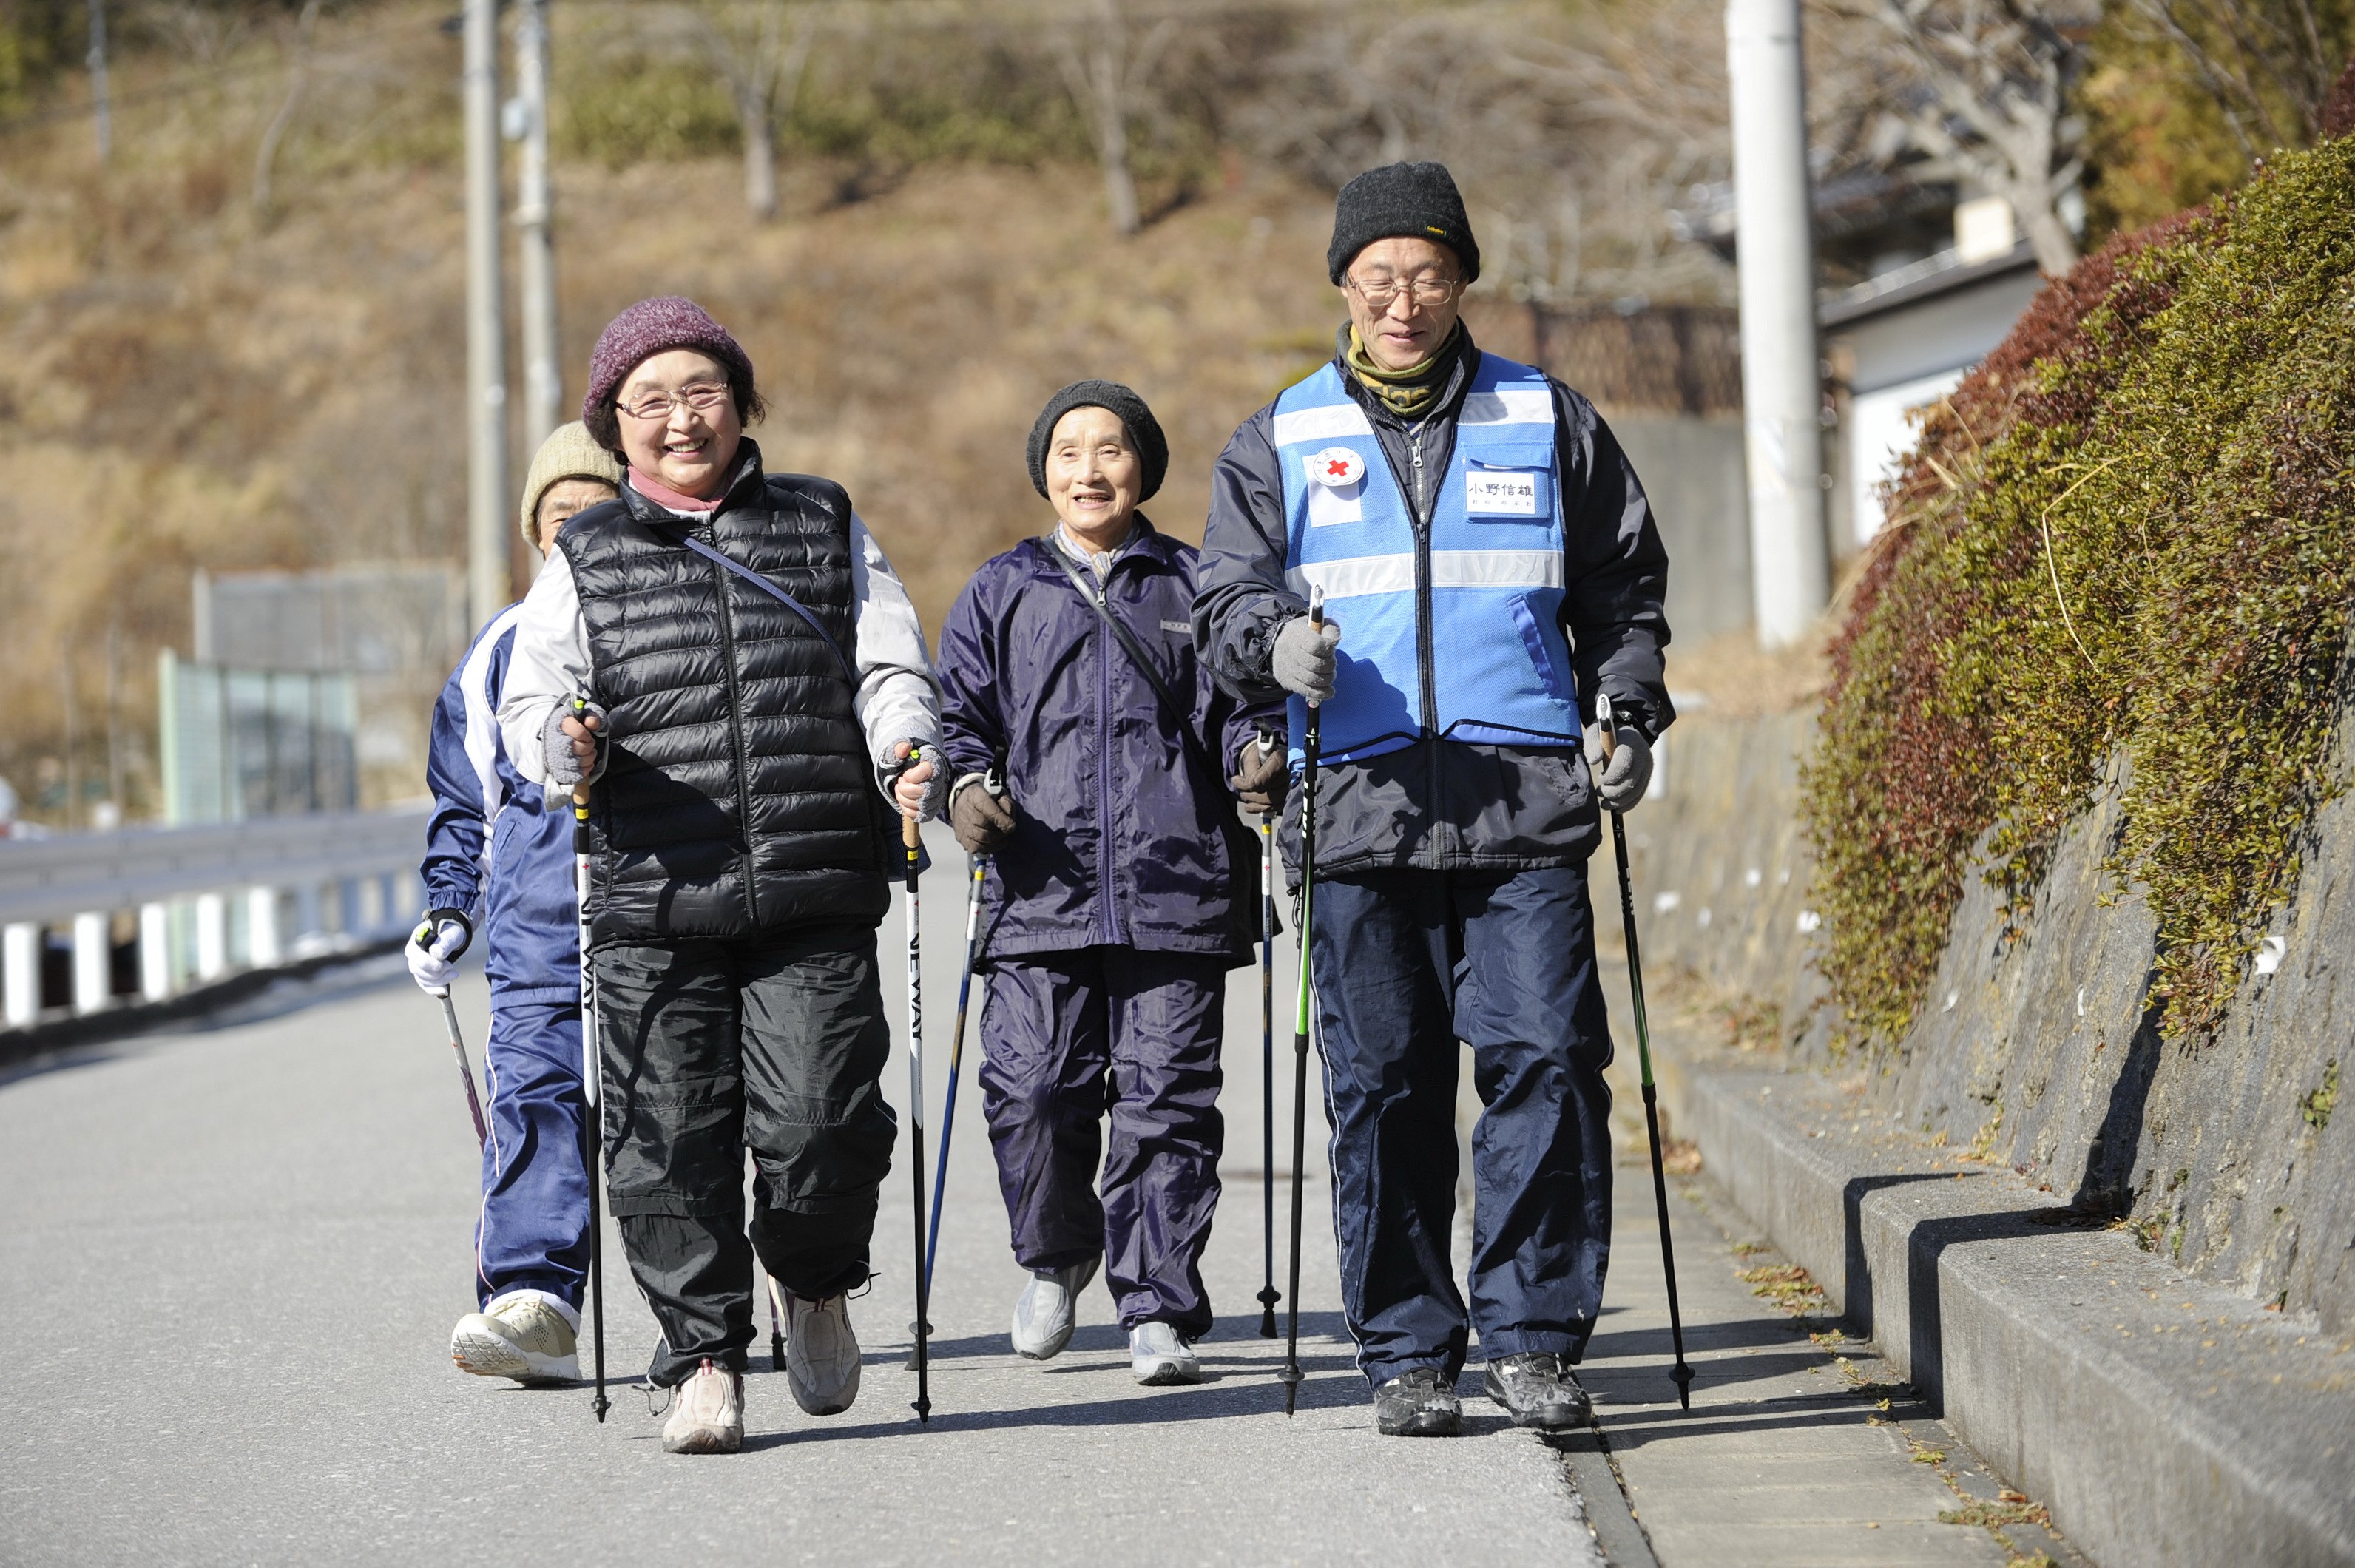 La marche nordique, un dérivé du ski de fond, est l’une des activités organisées par les bénévoles de la Croix-Rouge du Japon à l’intention de la population des collectivités de logements préfabriqués, dont la majorité est composée de personnes âgées, afin de les aider à garder la forme et à briser l’isolement.  